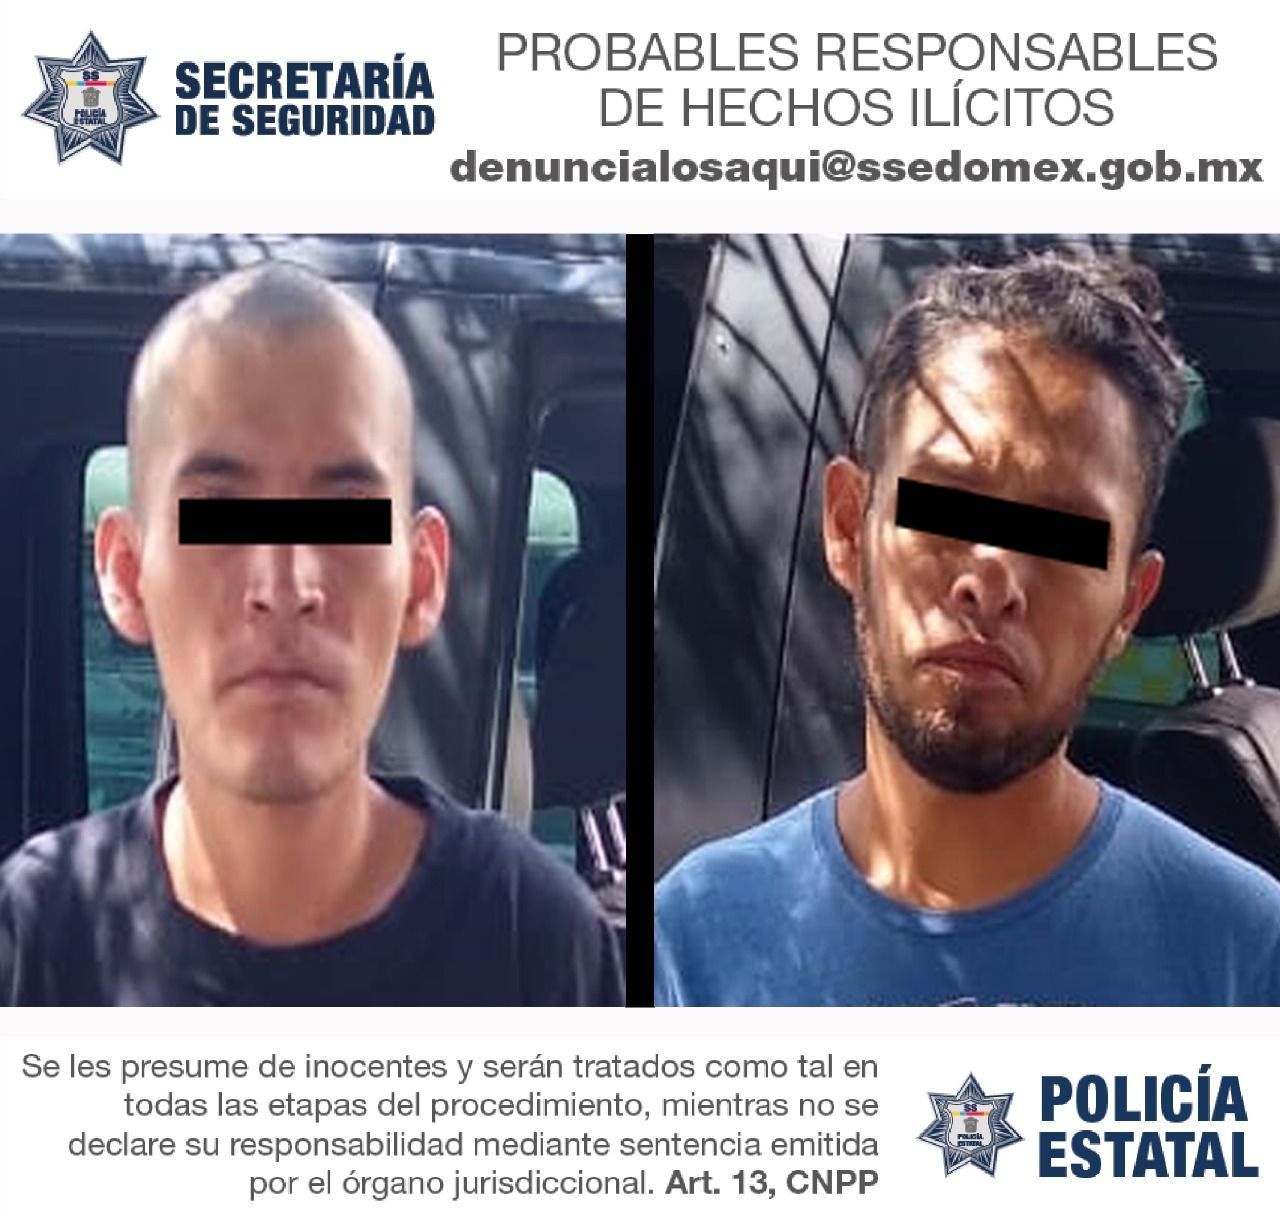 Policía de la SS detiene a dos presuntos malandrines por portación de arma de fuego sin permiso en Chimalhuacan